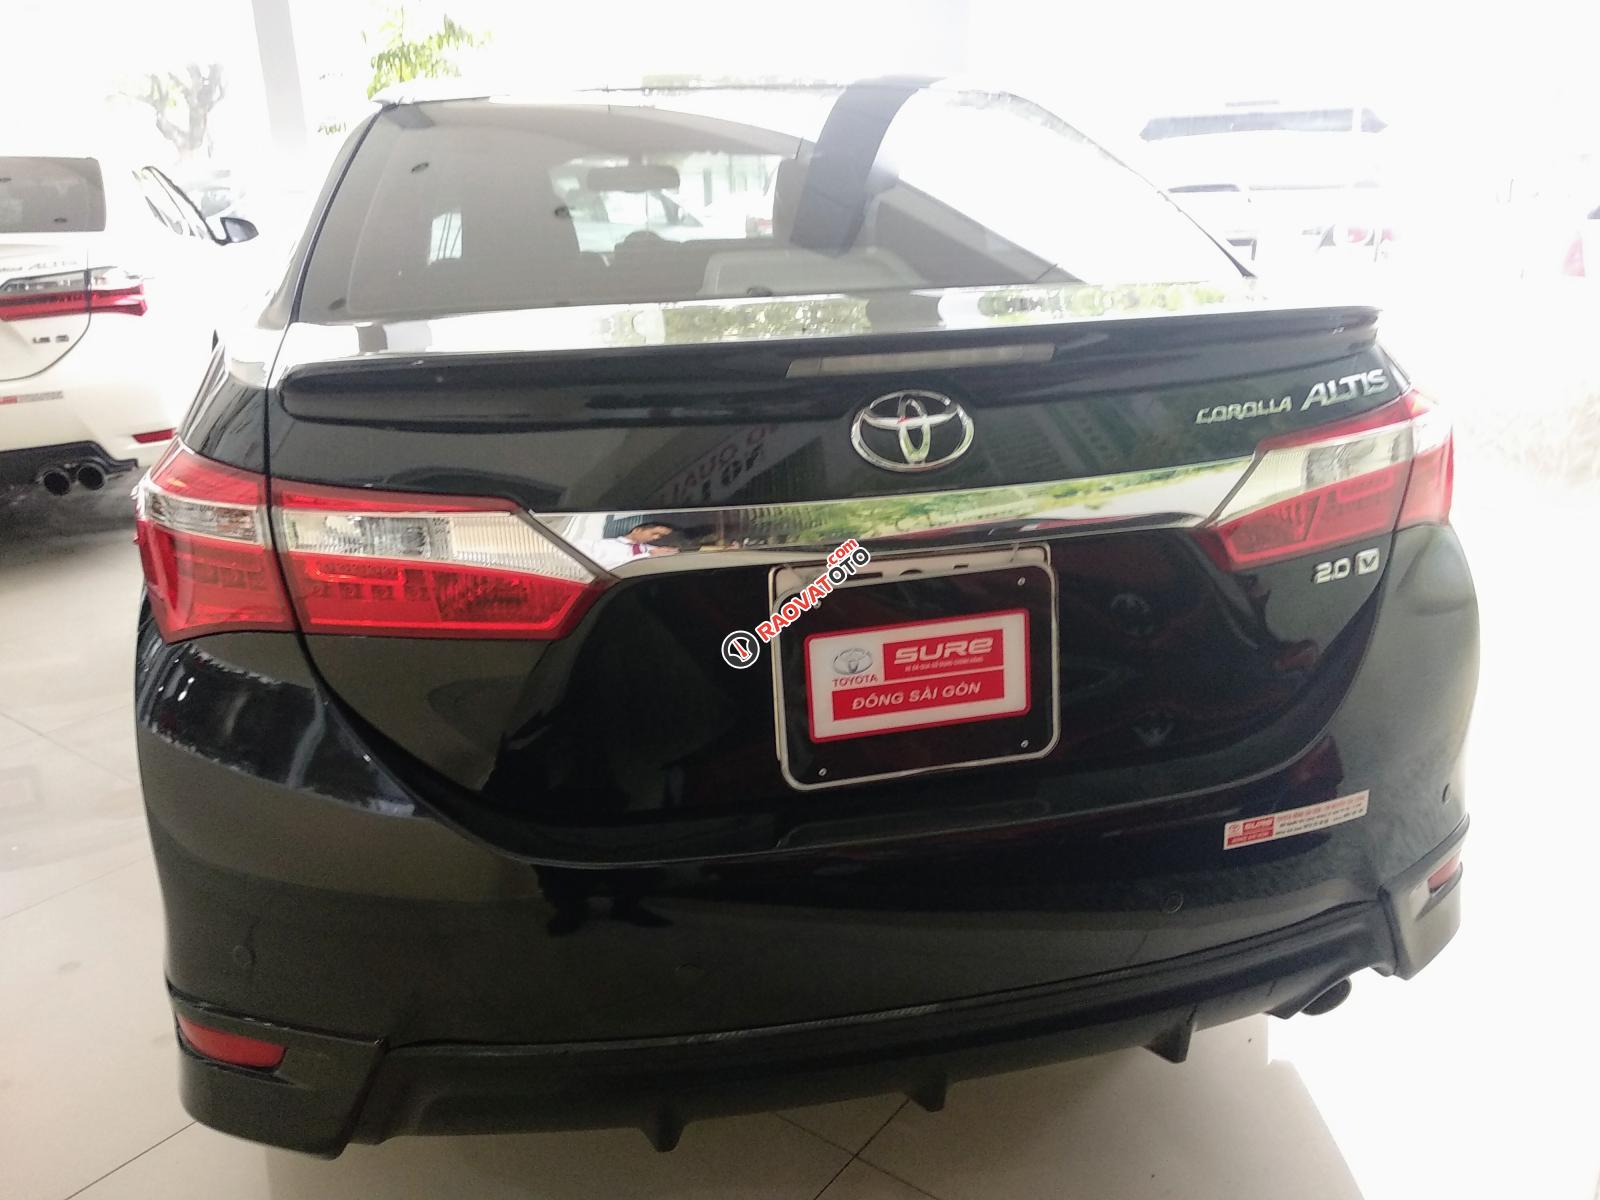 Bán Toyota Corolla Altis 2.0V đời 2016, màu đen, ưu đãi giá tốt hơn cho khách nào đến xem xe trực tiếp-2